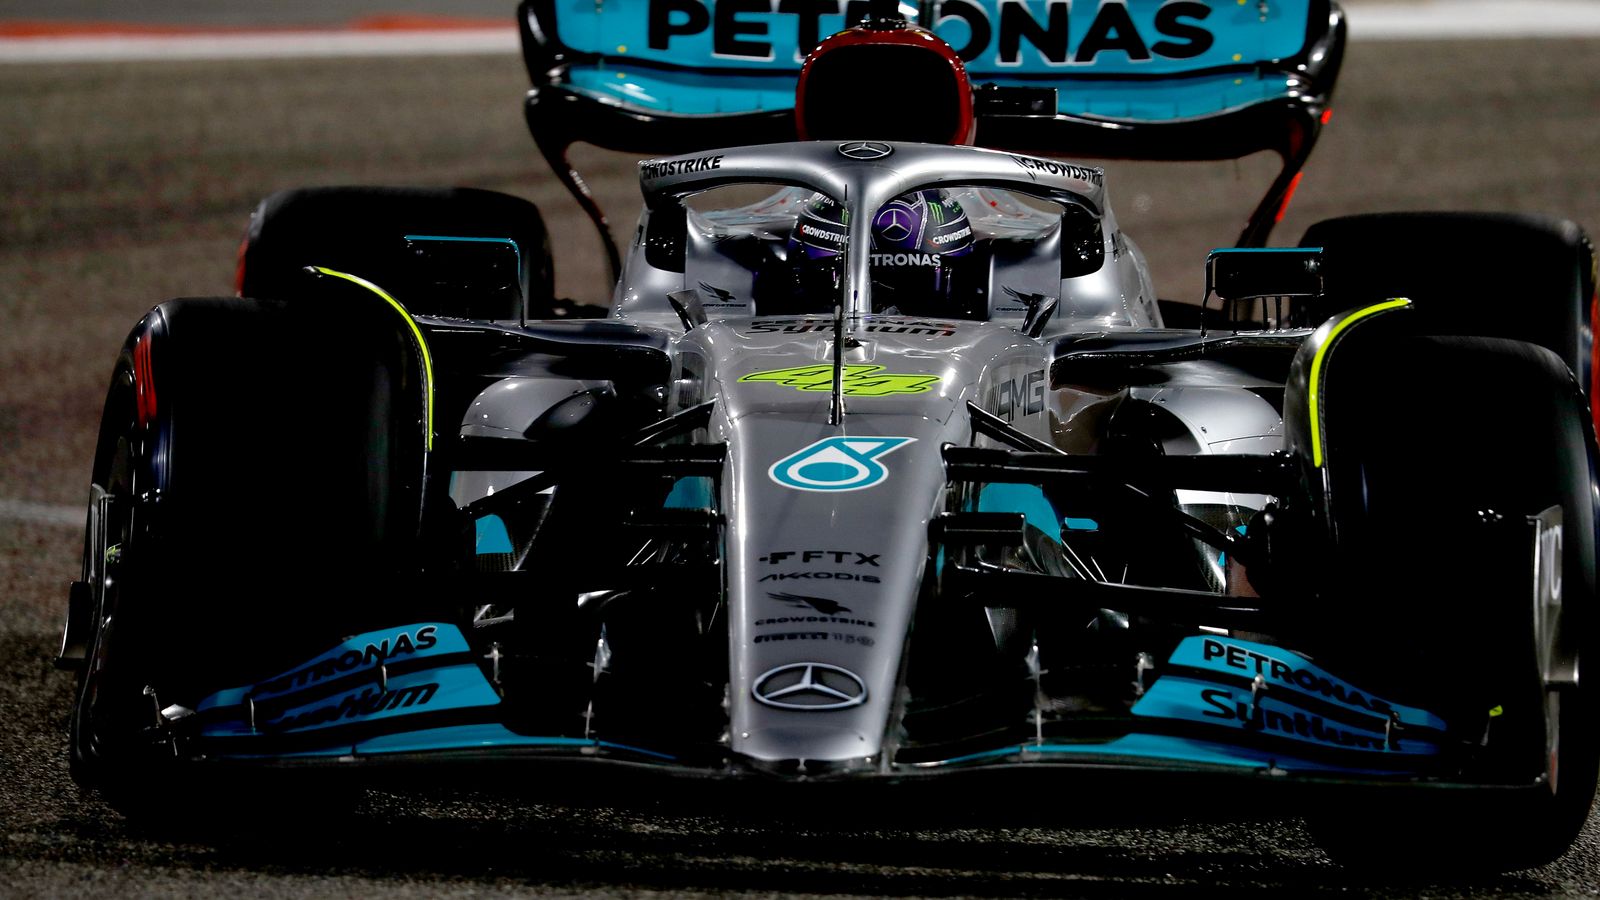 F1 GP de Baréin: ¿Qué preocupa a Mercedes? ¿Pueden solucionar los problemas?  Explicando las preocupaciones mientras se avecina el abridor